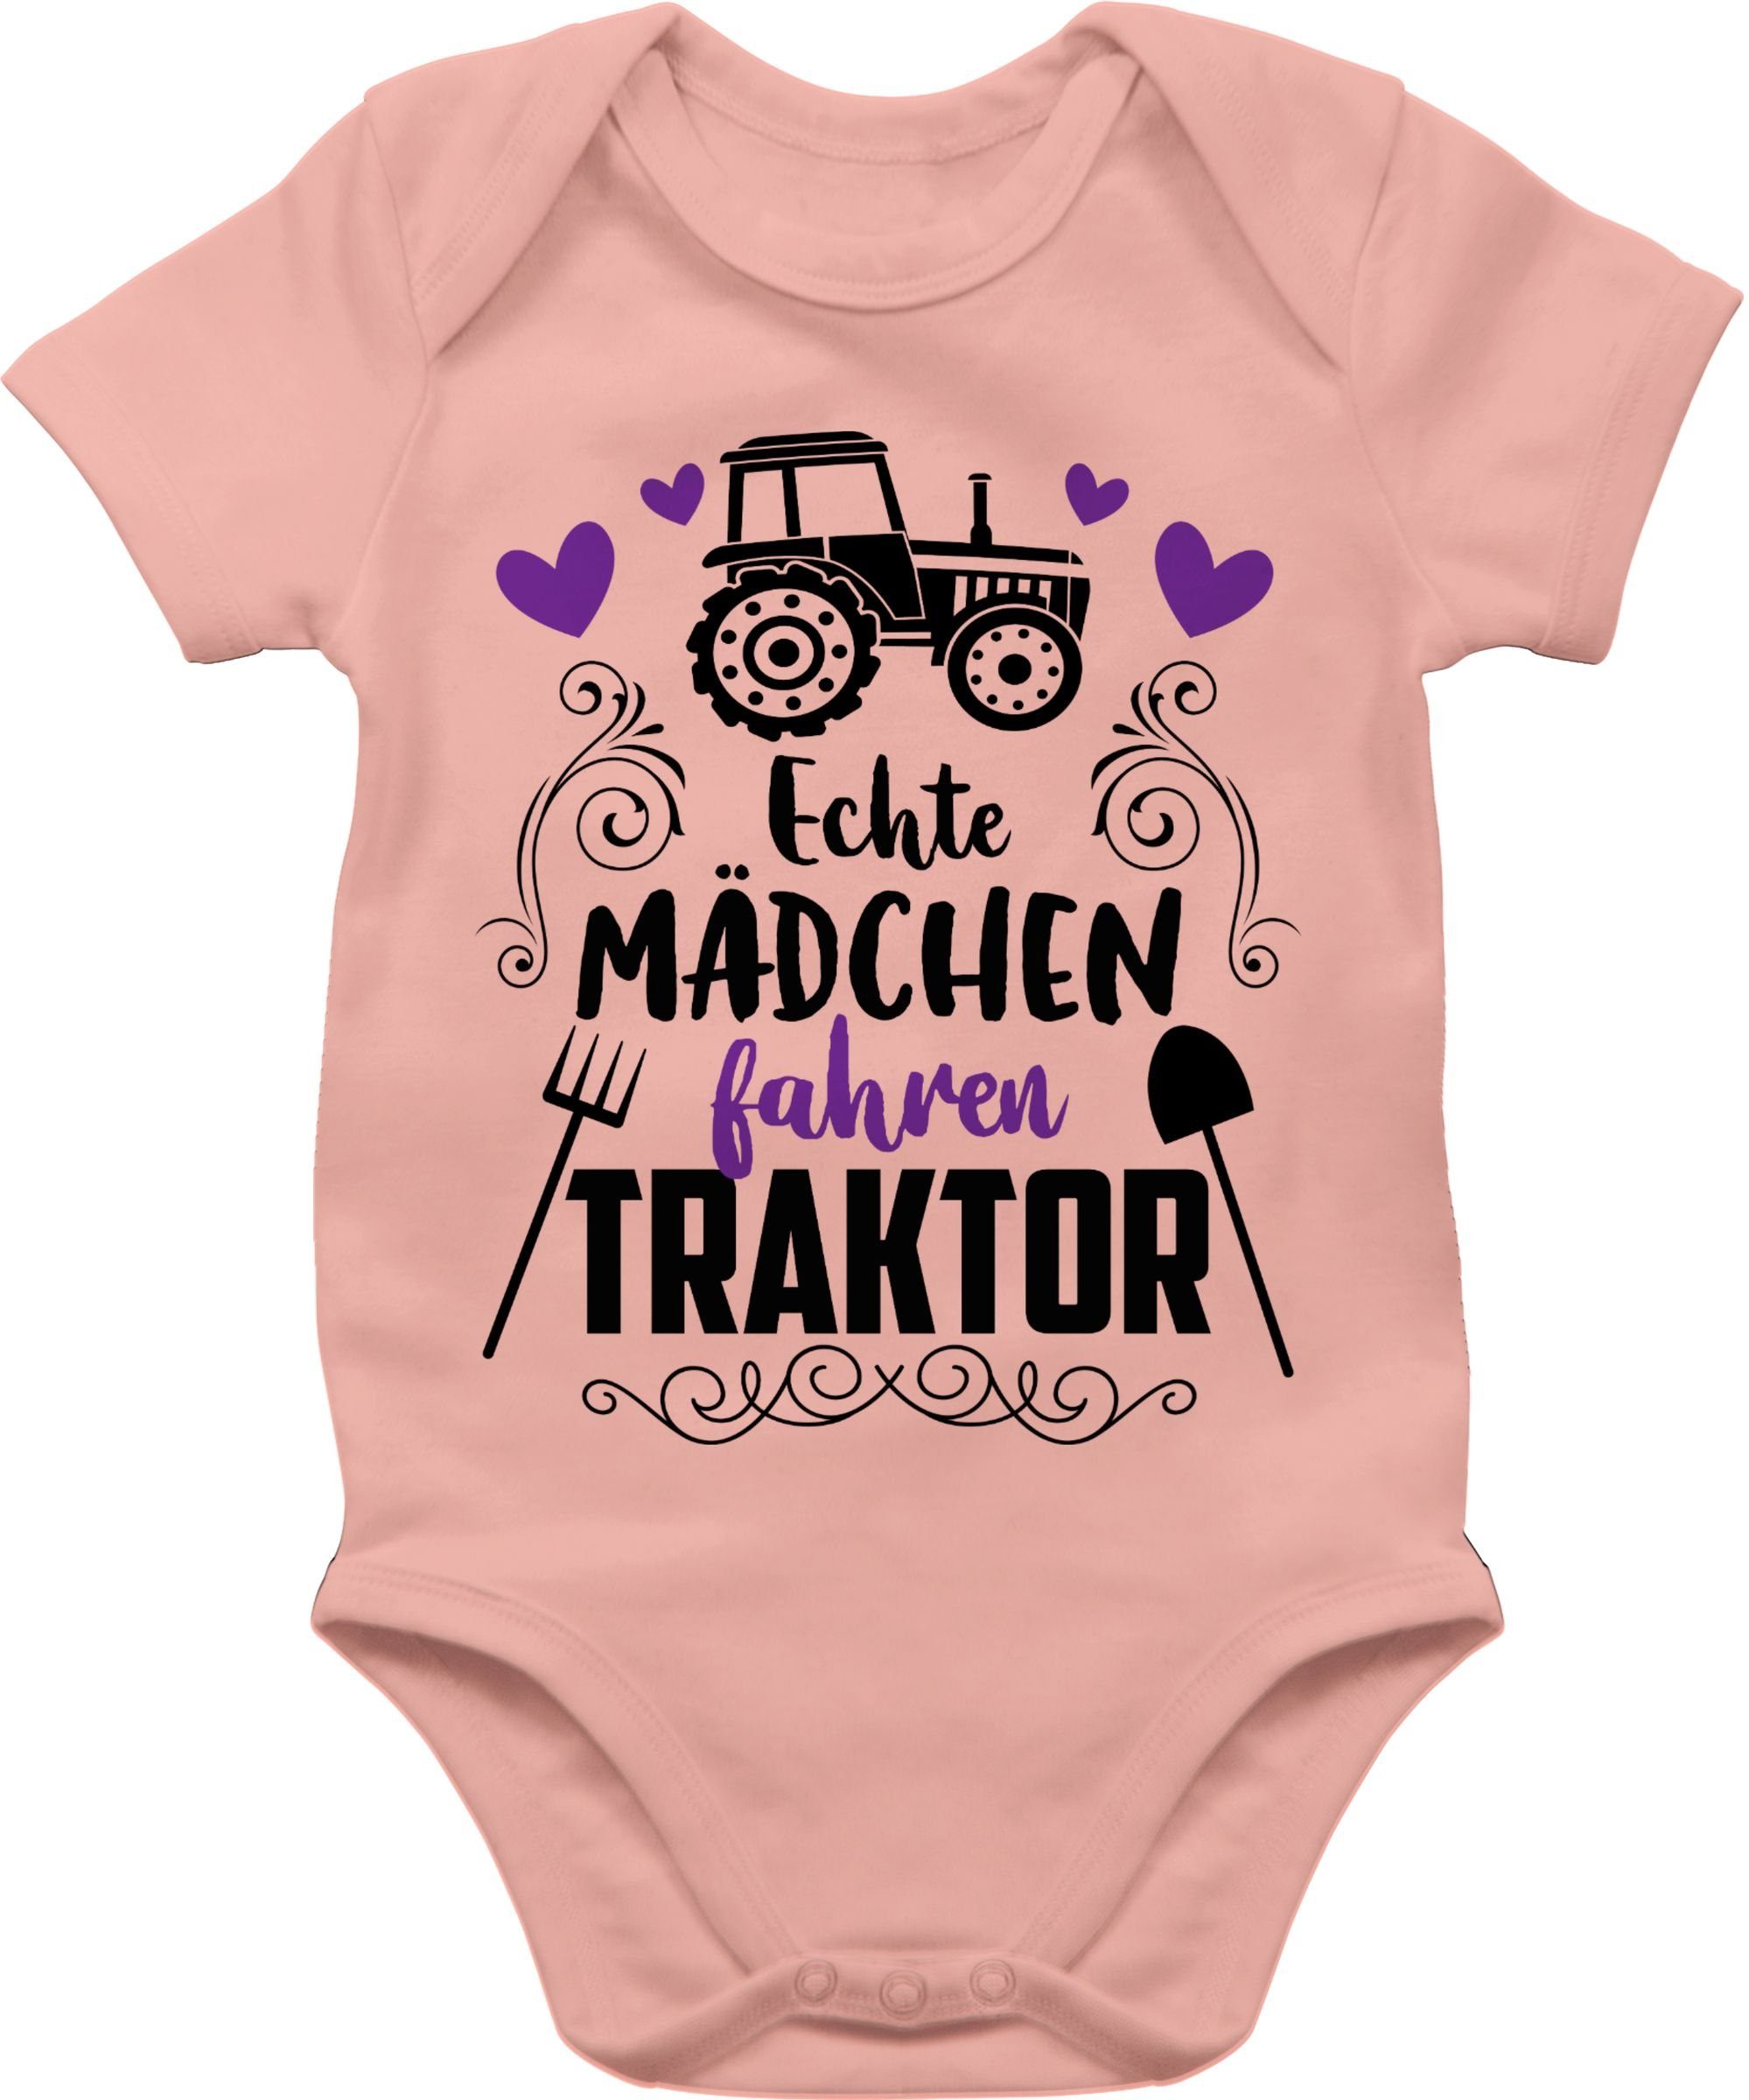 Baby 3 Echte Traktor und Shirtracer Co. Mädchen - schwarz Shirtbody fahren Babyrosa Bagger Traktor